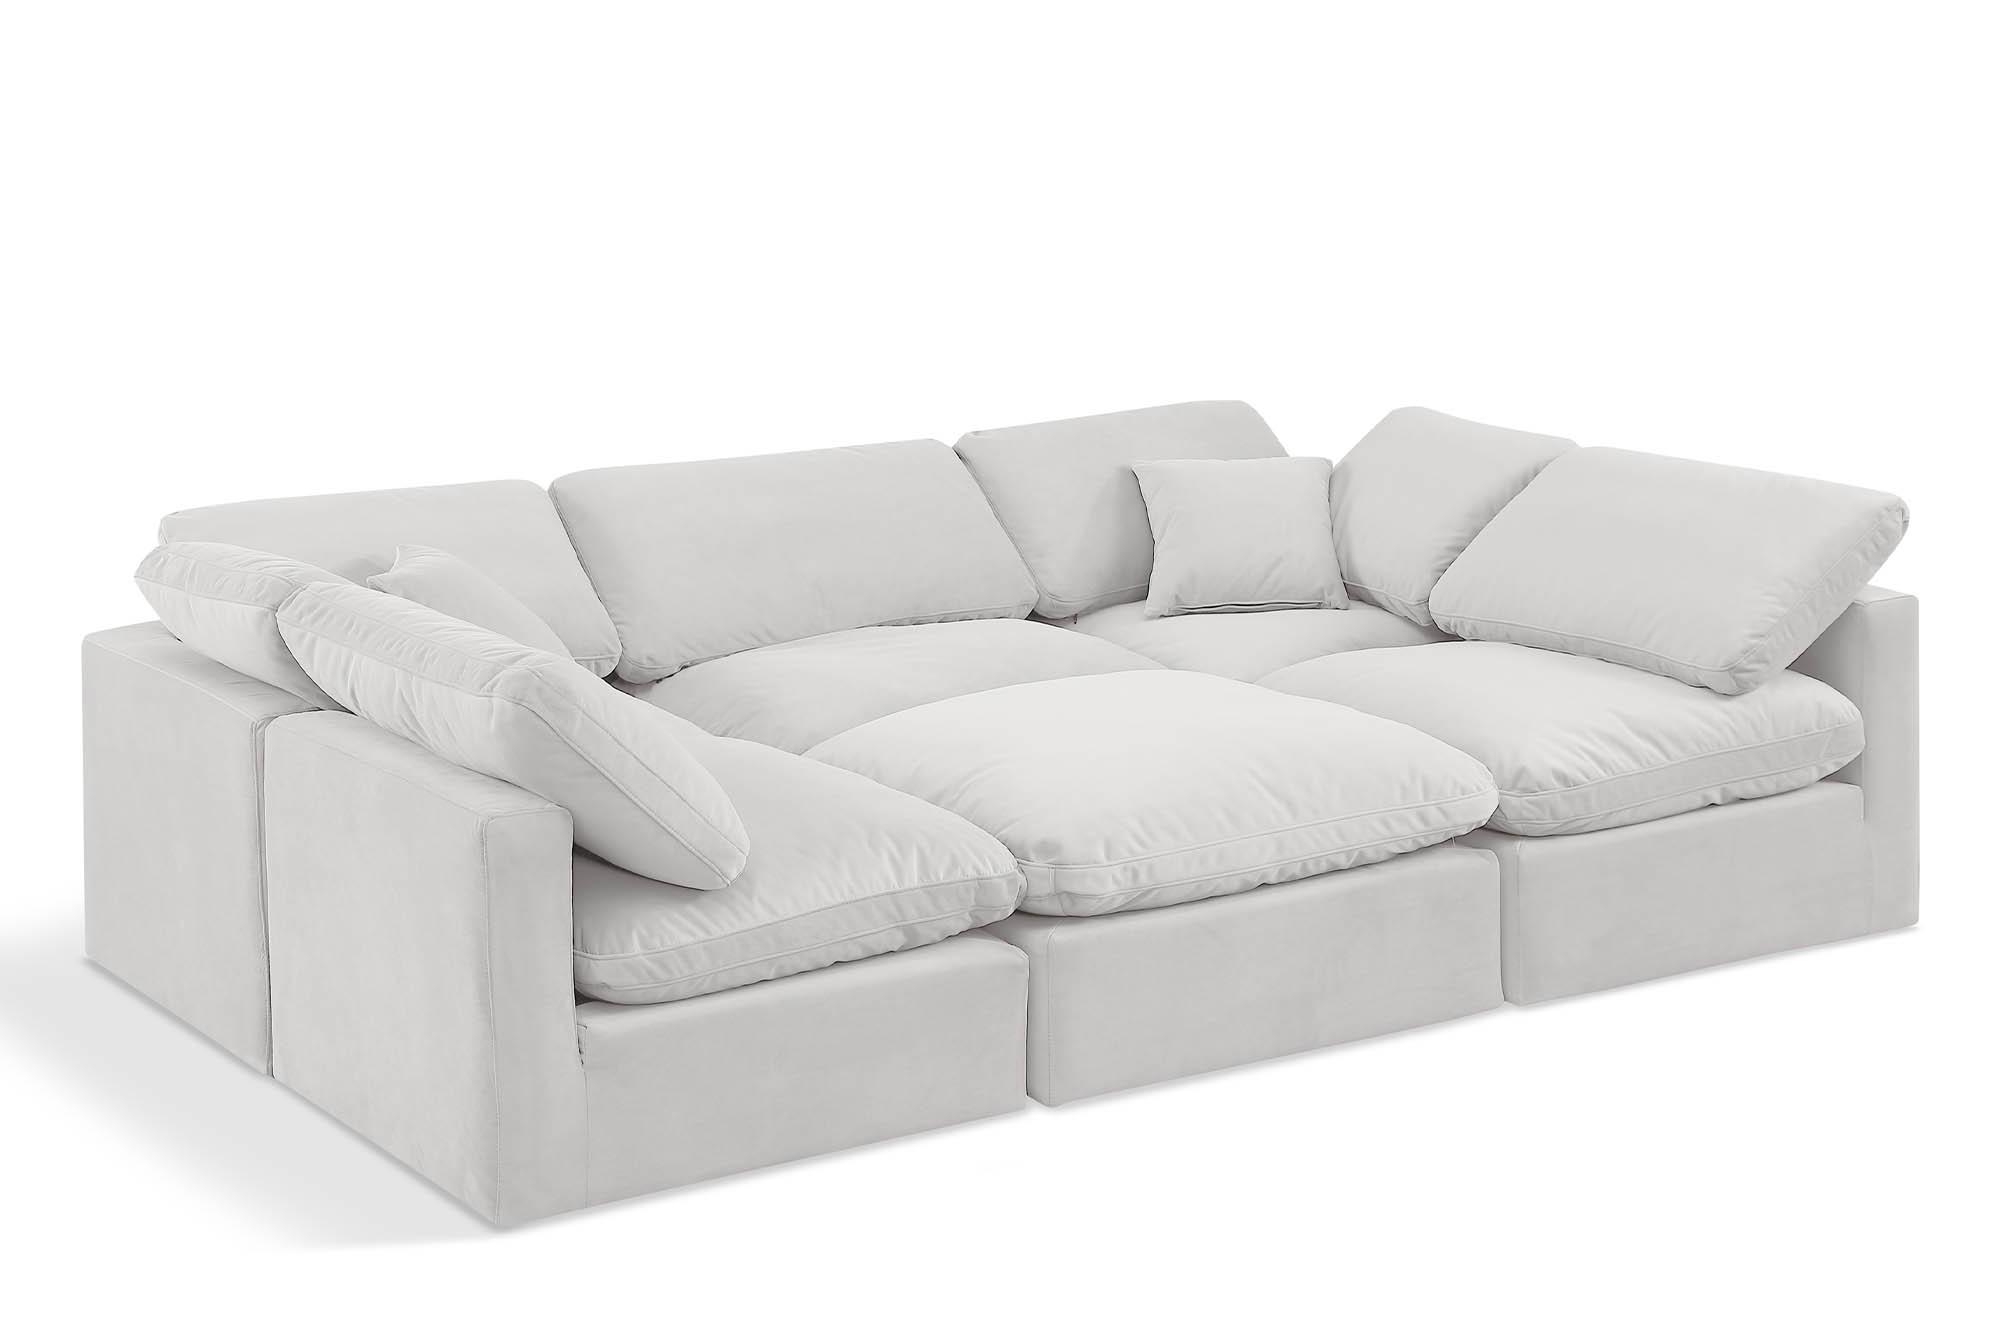 Contemporary, Modern Modular Sectional Sofa INDULGE 147Cream-Sec6C 147Cream-Sec6C in Cream Velvet